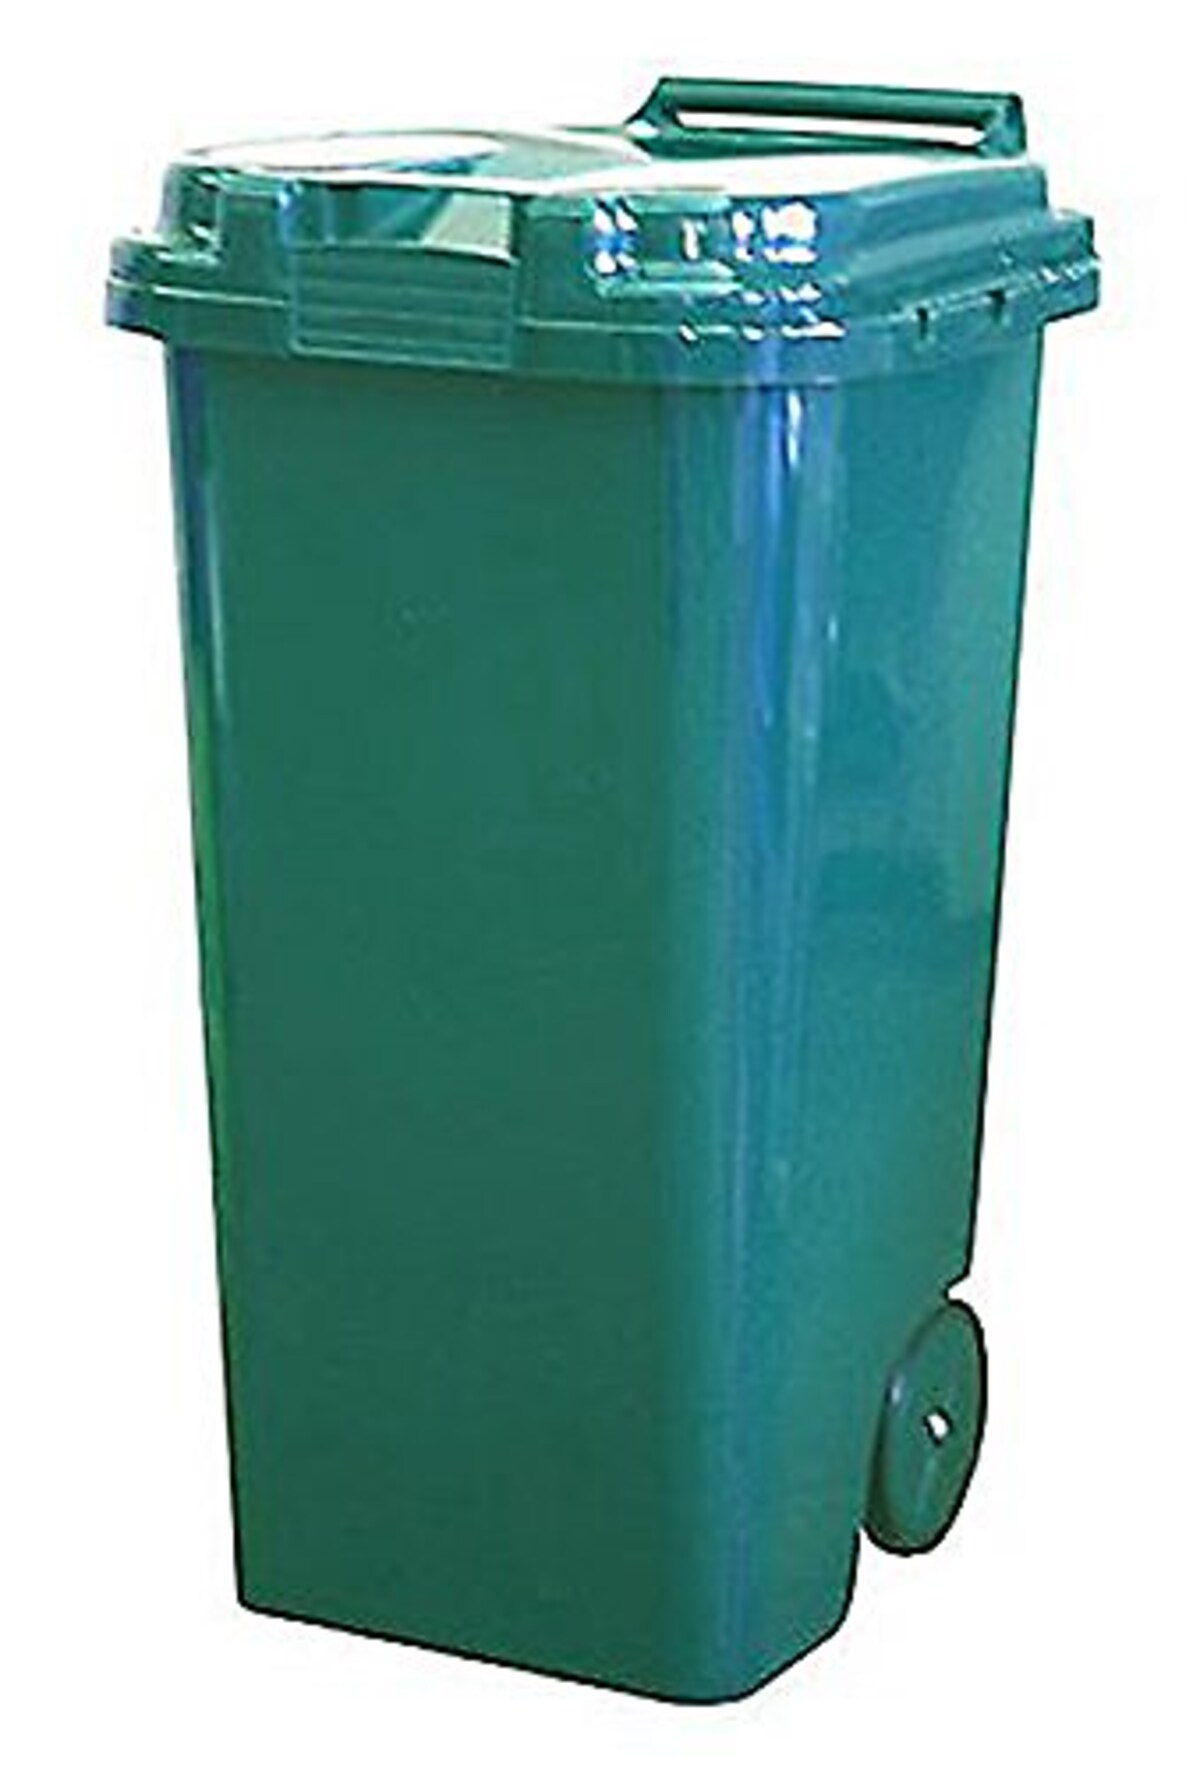  ゴミ箱 トラッシュカン 90L 屋外用 ブラウン画像3 